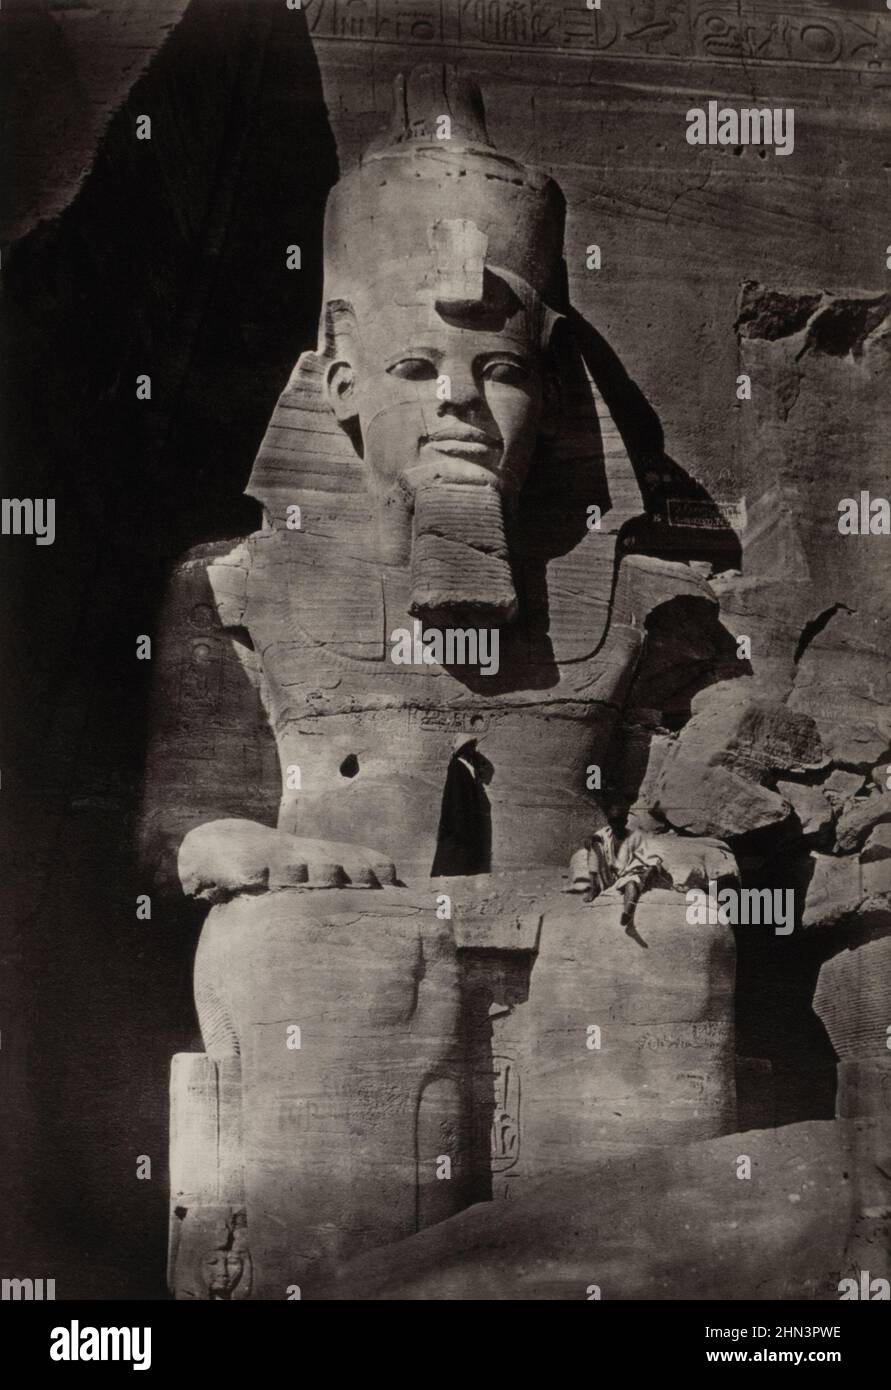 Foto vintage del siglo 19th de Abu Simbel en Egipto. Por Francis Frith. 1862 Abu Simbel son dos templos masivos cortados en roca en la aldea de Abu Simbel, As Foto de stock